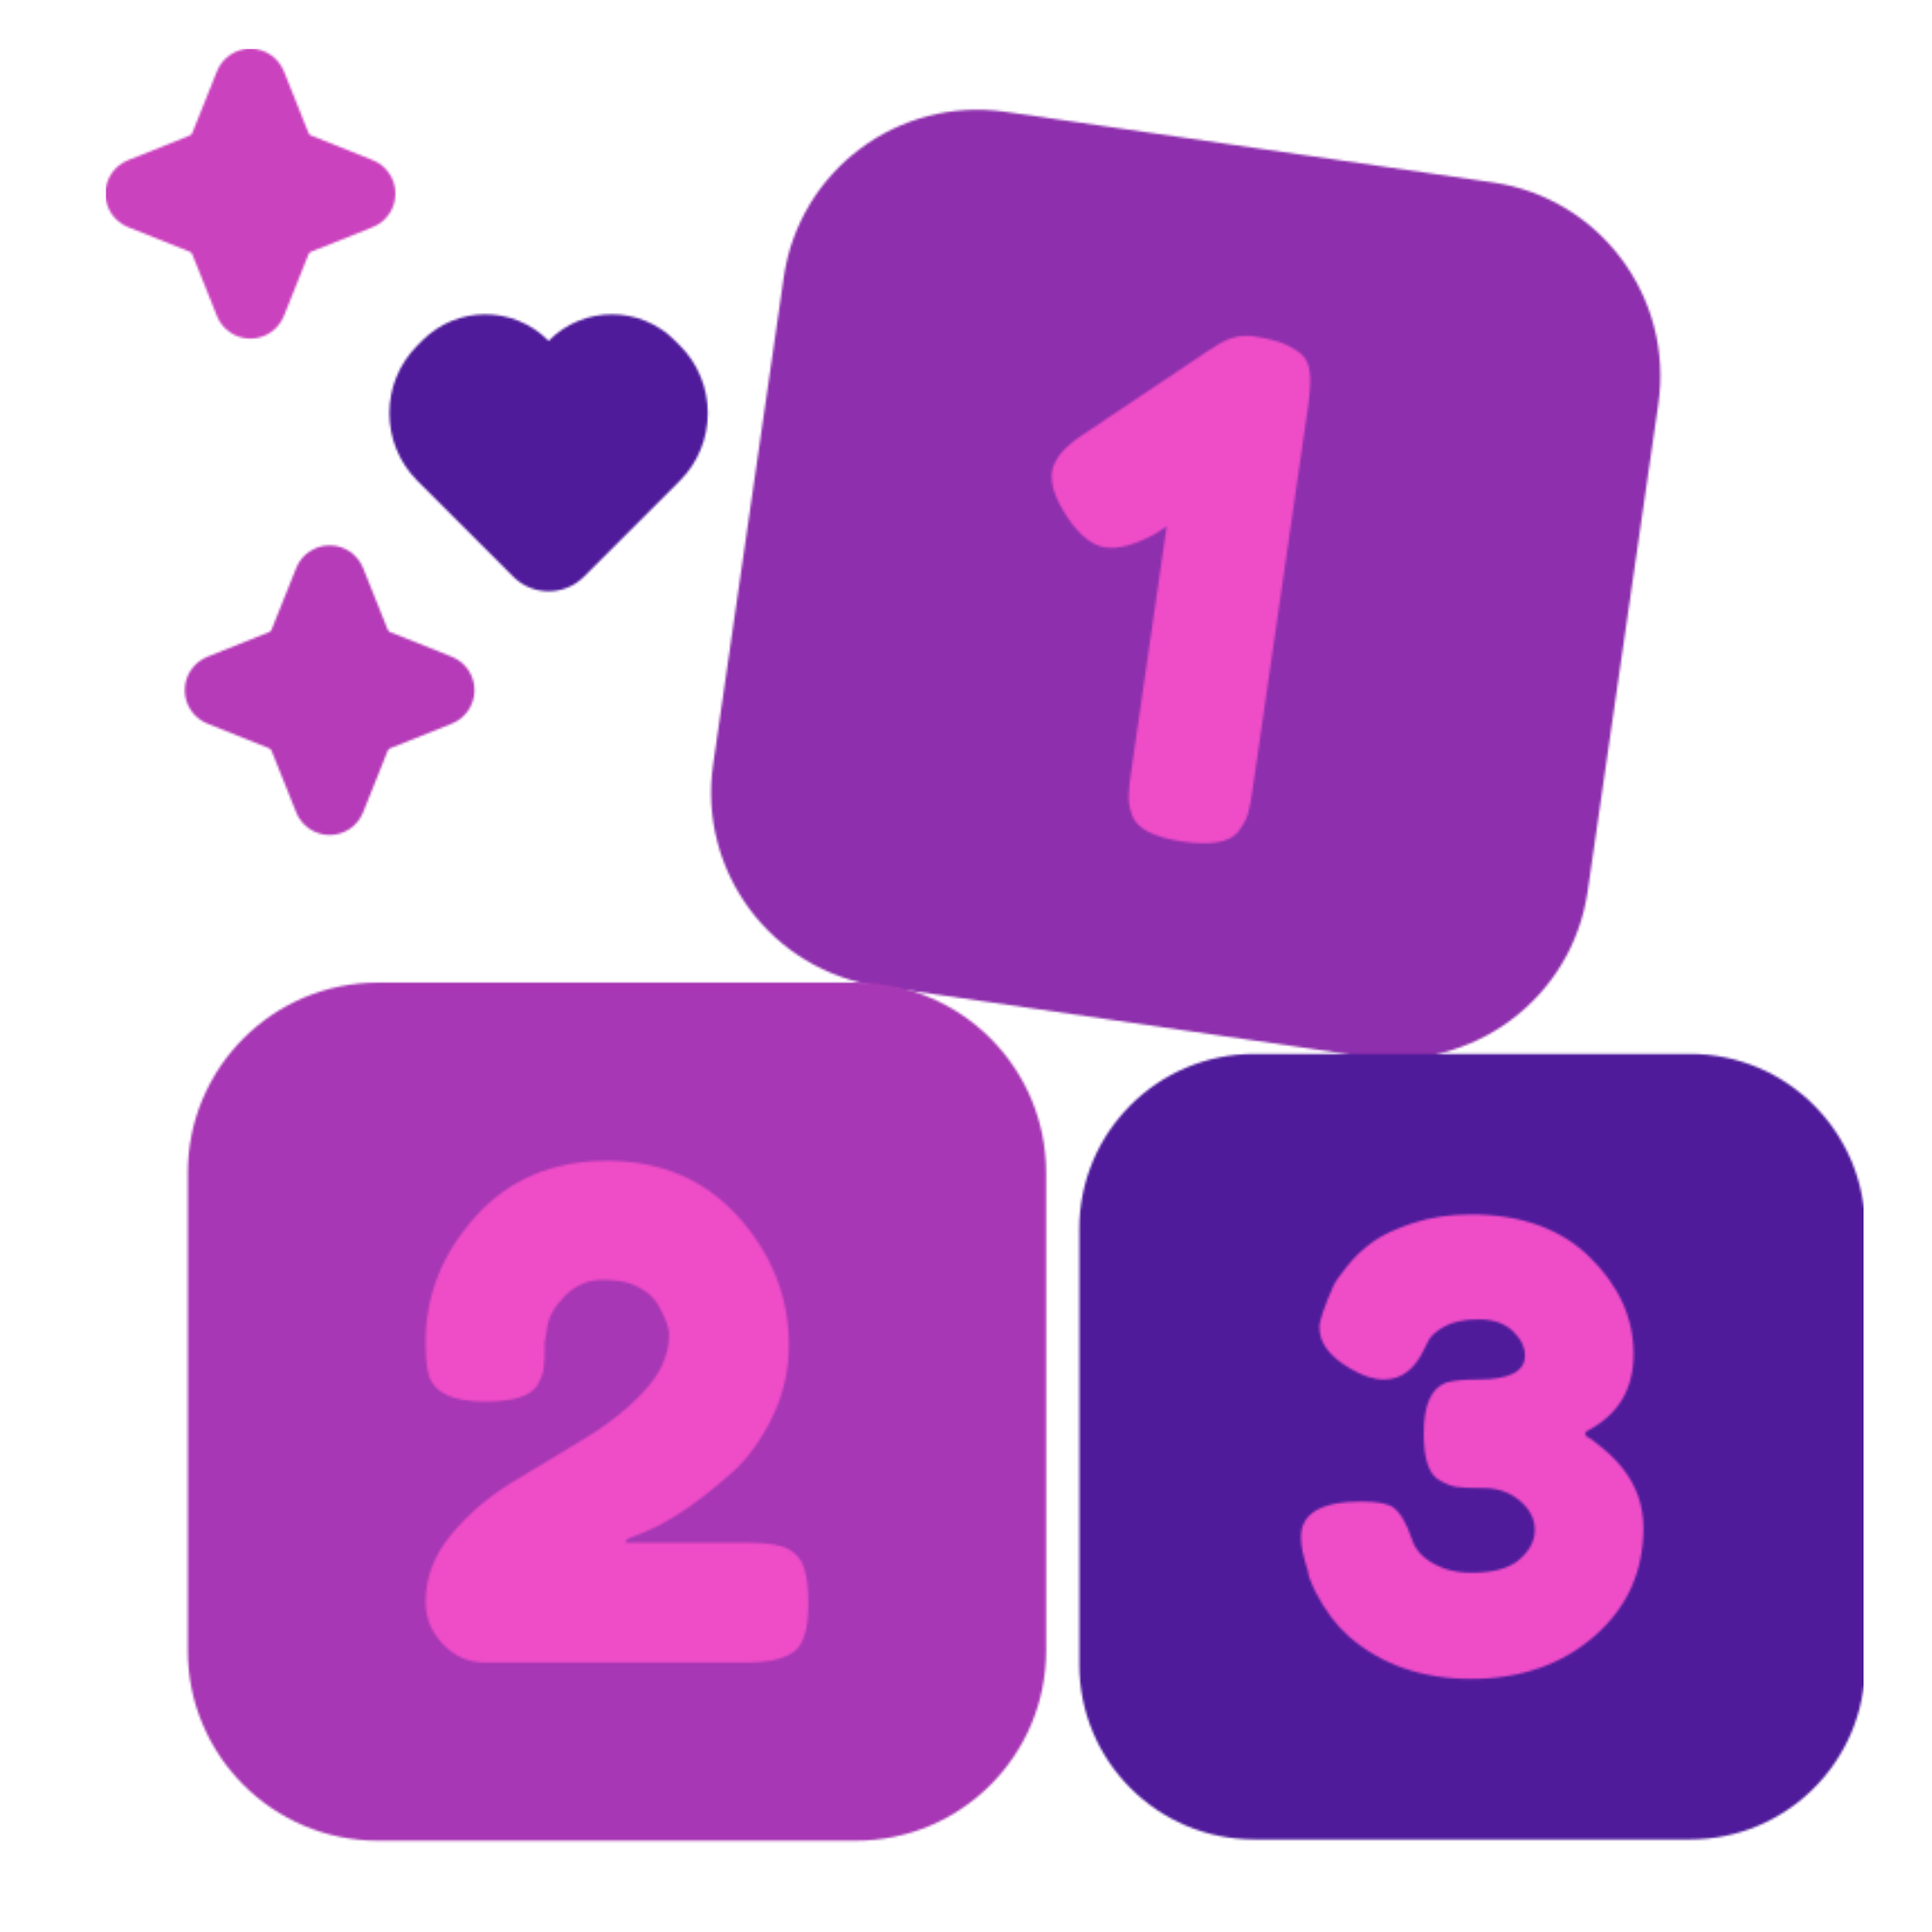 purple 1 2 3 blocks